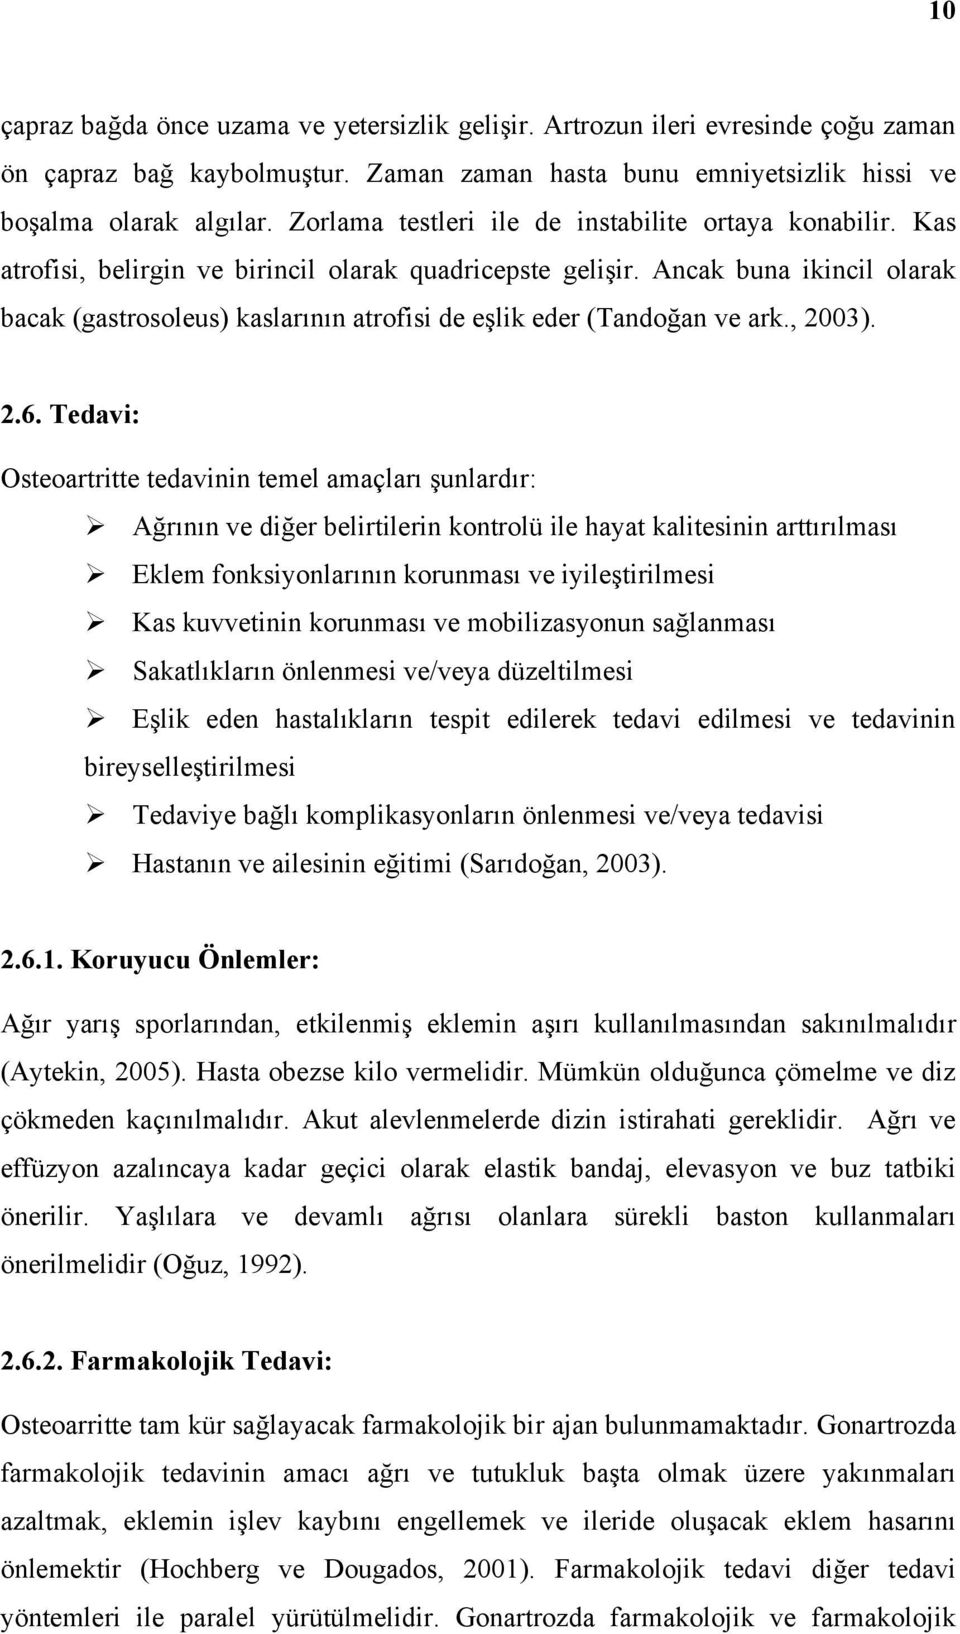 Ancak buna ikincil olarak bacak (gastrosoleus) kaslarının atrofisi de eşlik eder (Tandoğan ve ark., 2003). 2.6.